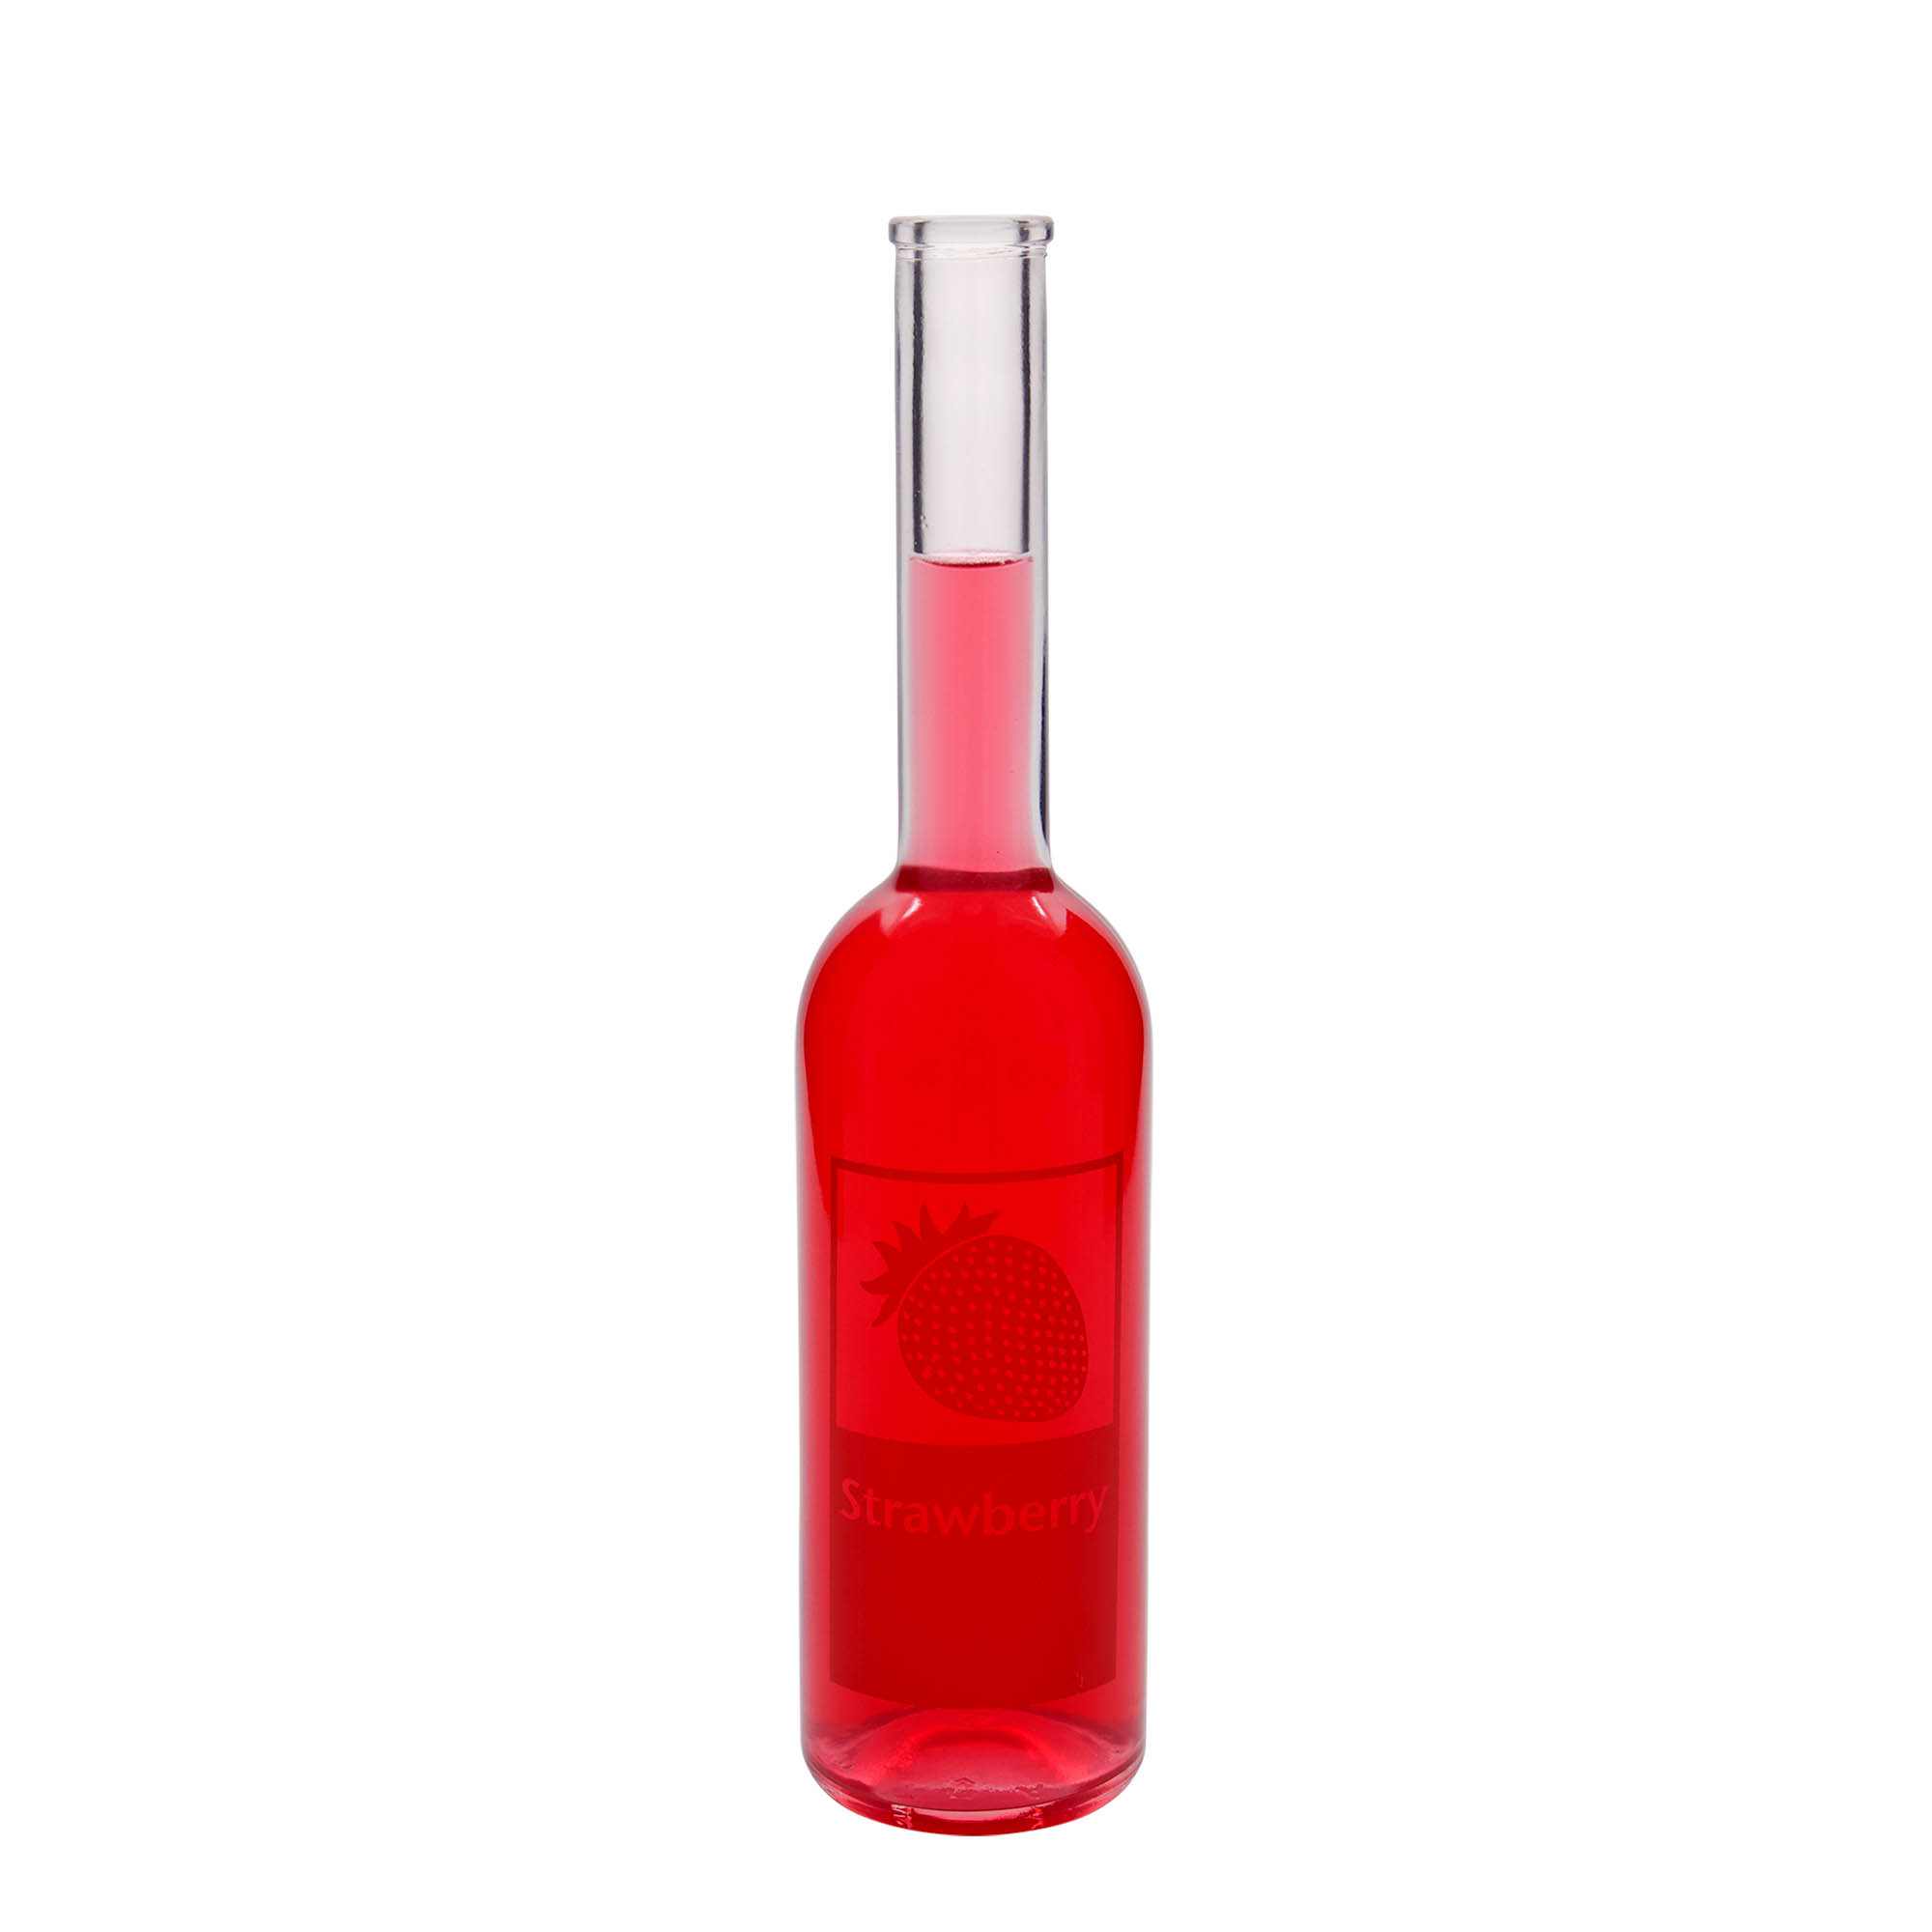 500 ml glasflaske 'Opera', motiv: Strawberry, åbning: Kork